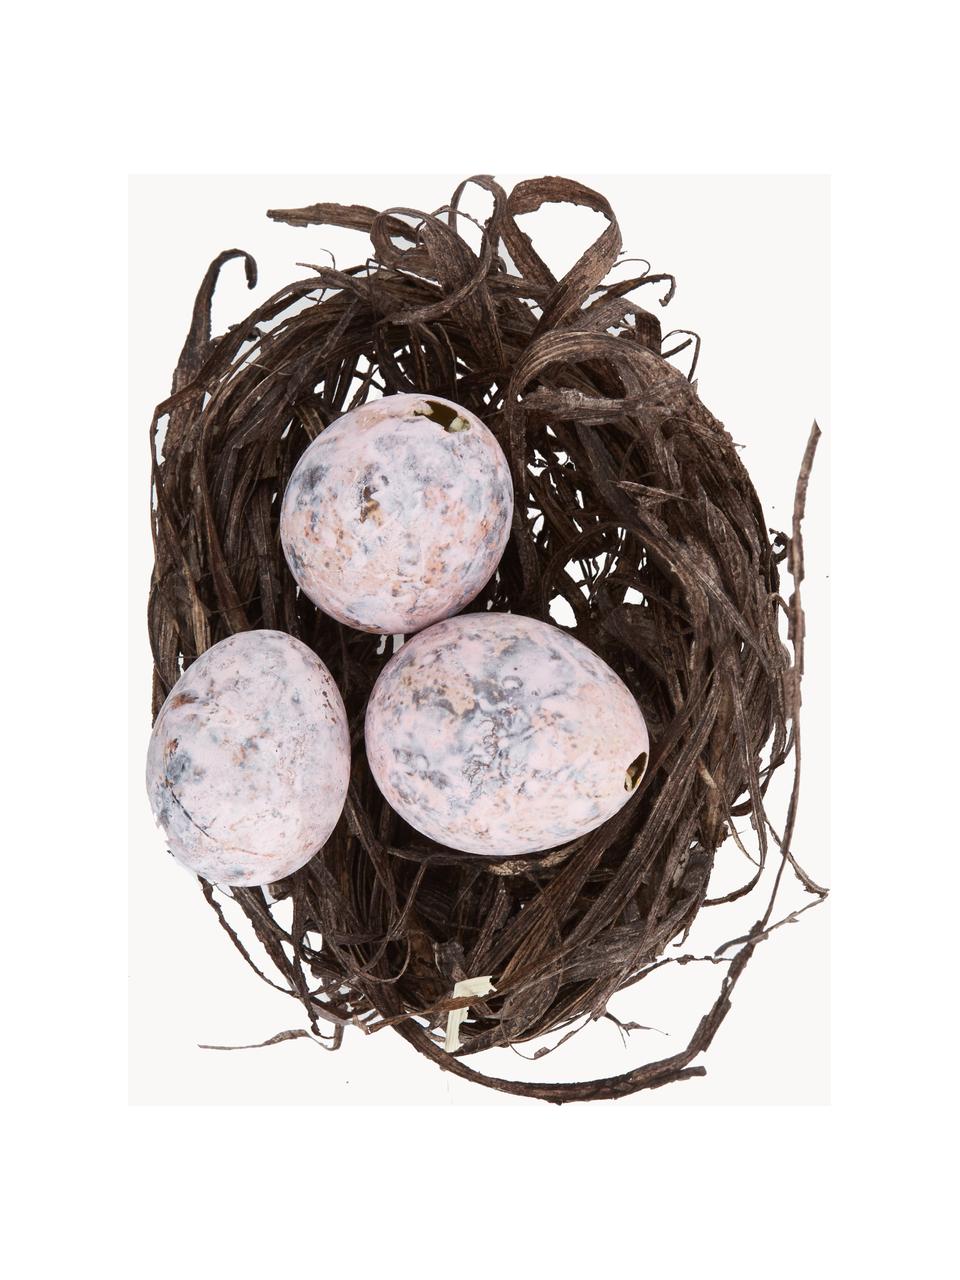 Sada dekorací Blush, 12 dílů, Pravá vajíčka, Odstíny růžové, šedá, hnědá, Sada s různými velikostmi